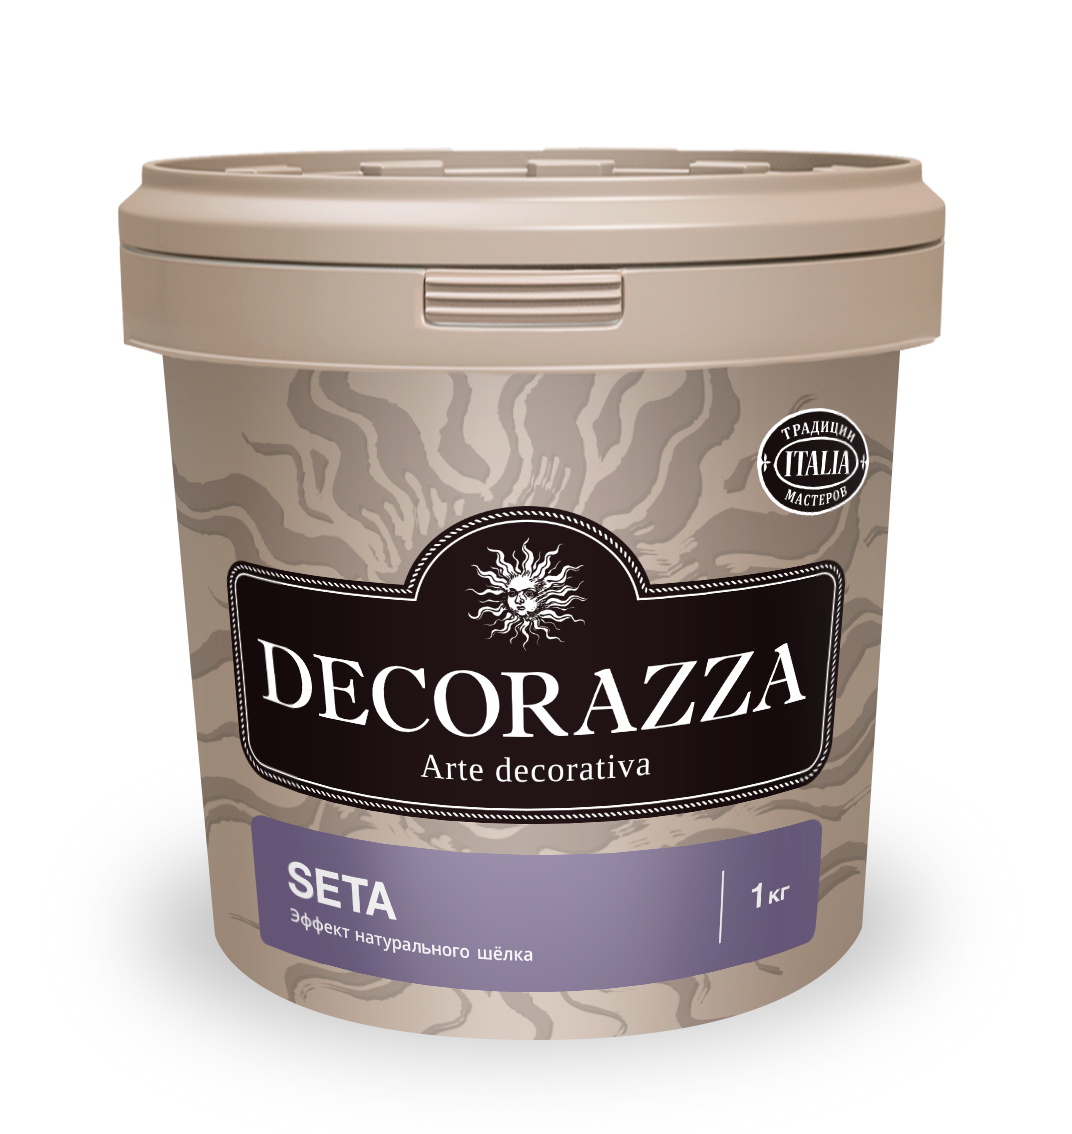 Декоративная штукатурка эффект натурального шелка Decorazza Seta, ST 800, золото, 1 кг